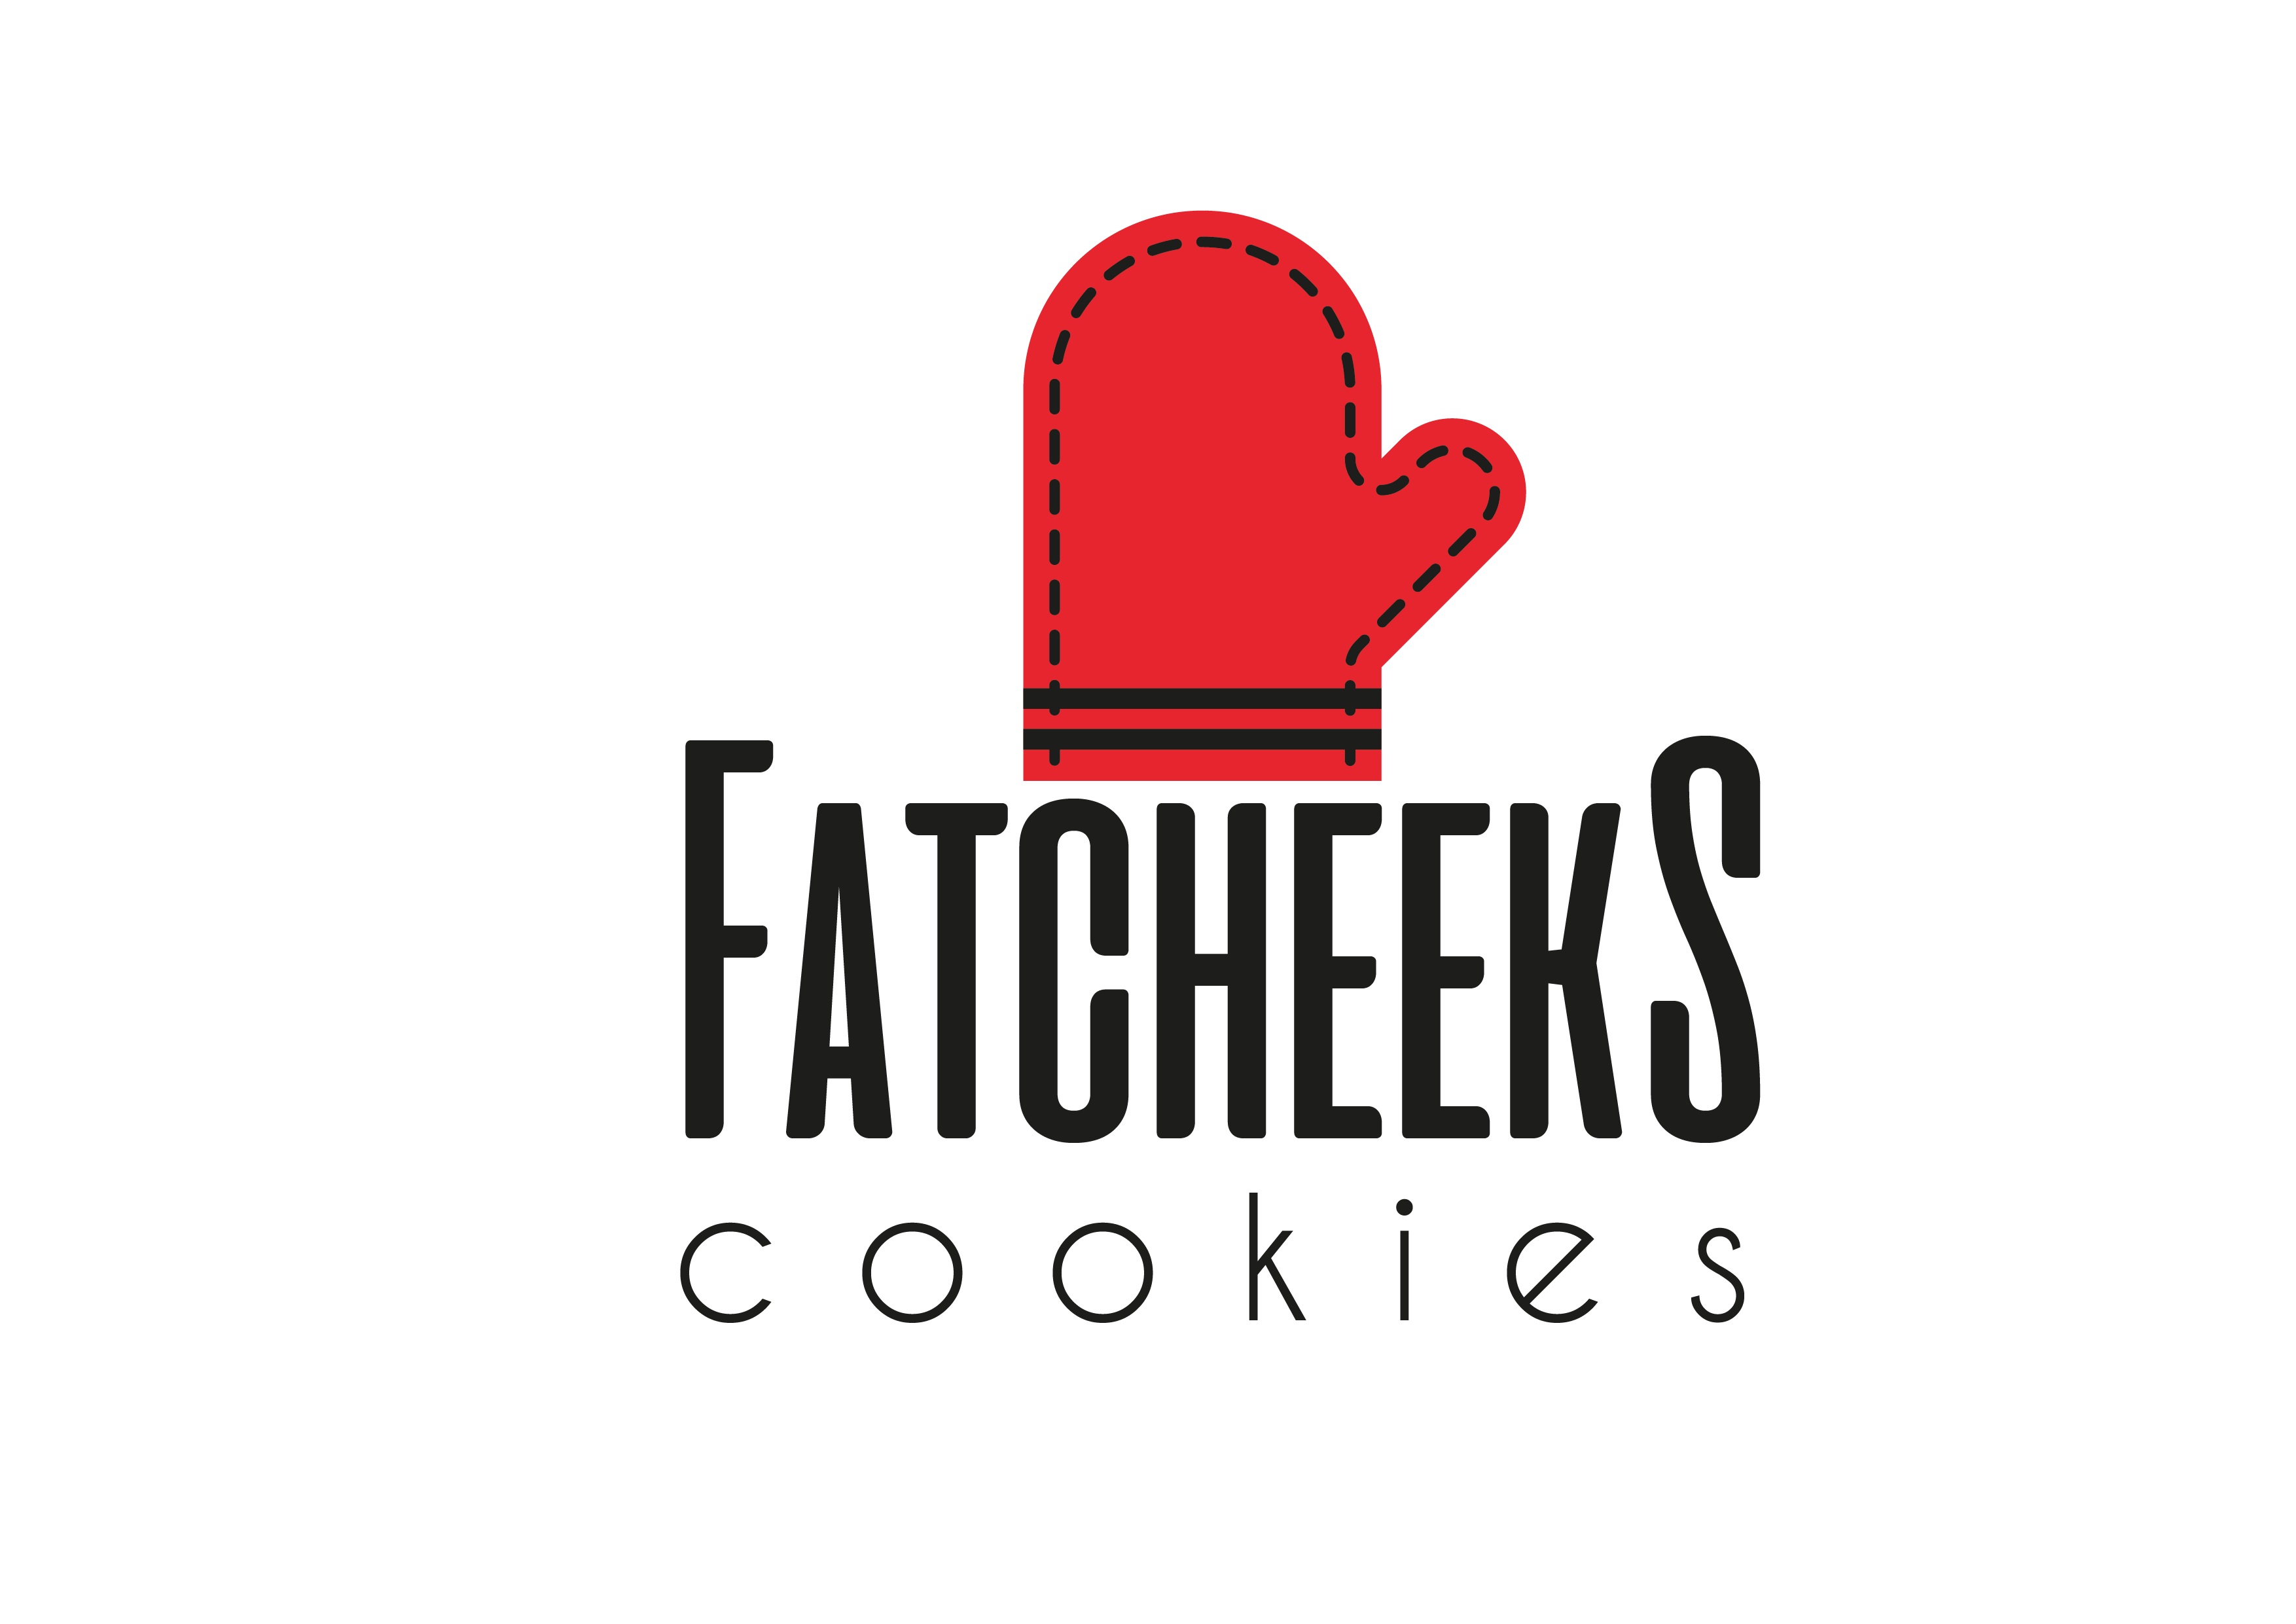 Fatcheeks Cookies